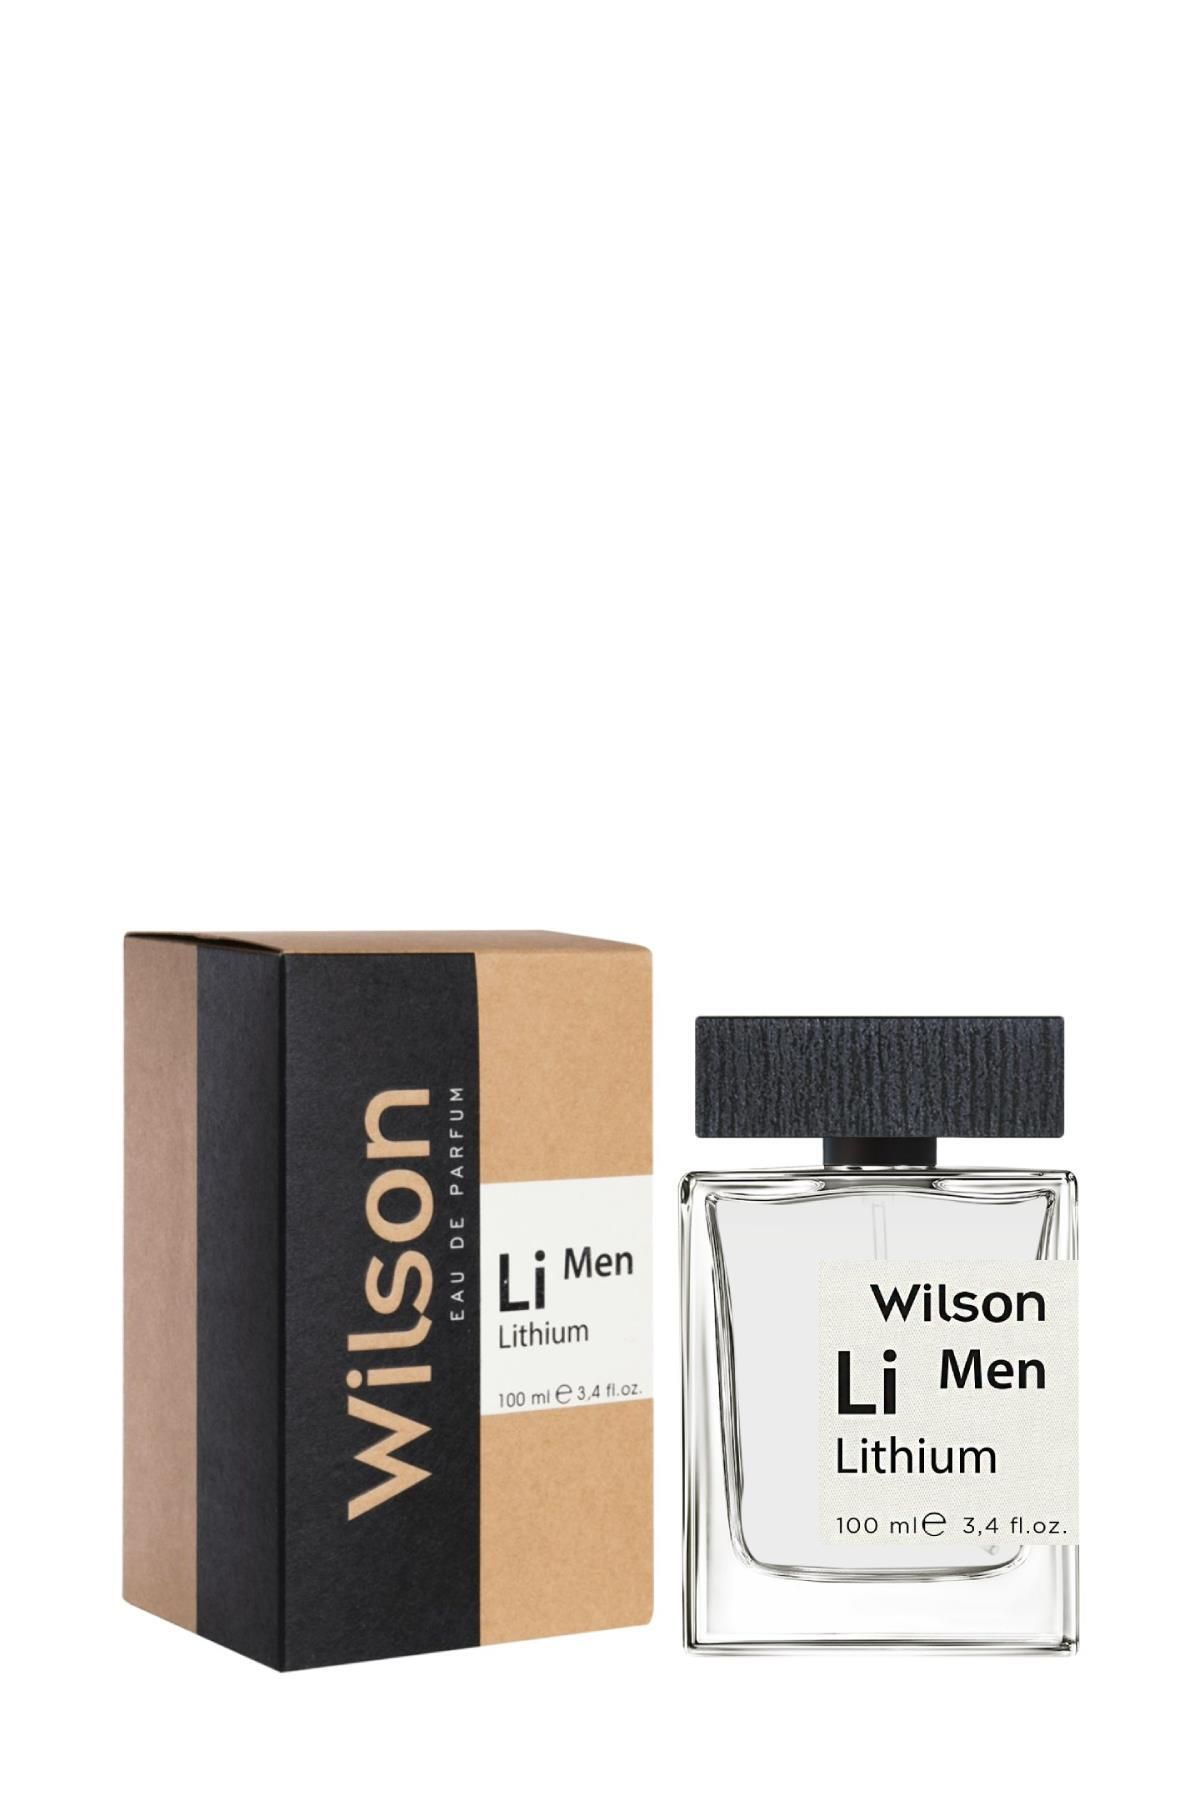 Wilson Lithium Erkek Parfüm 100 ml